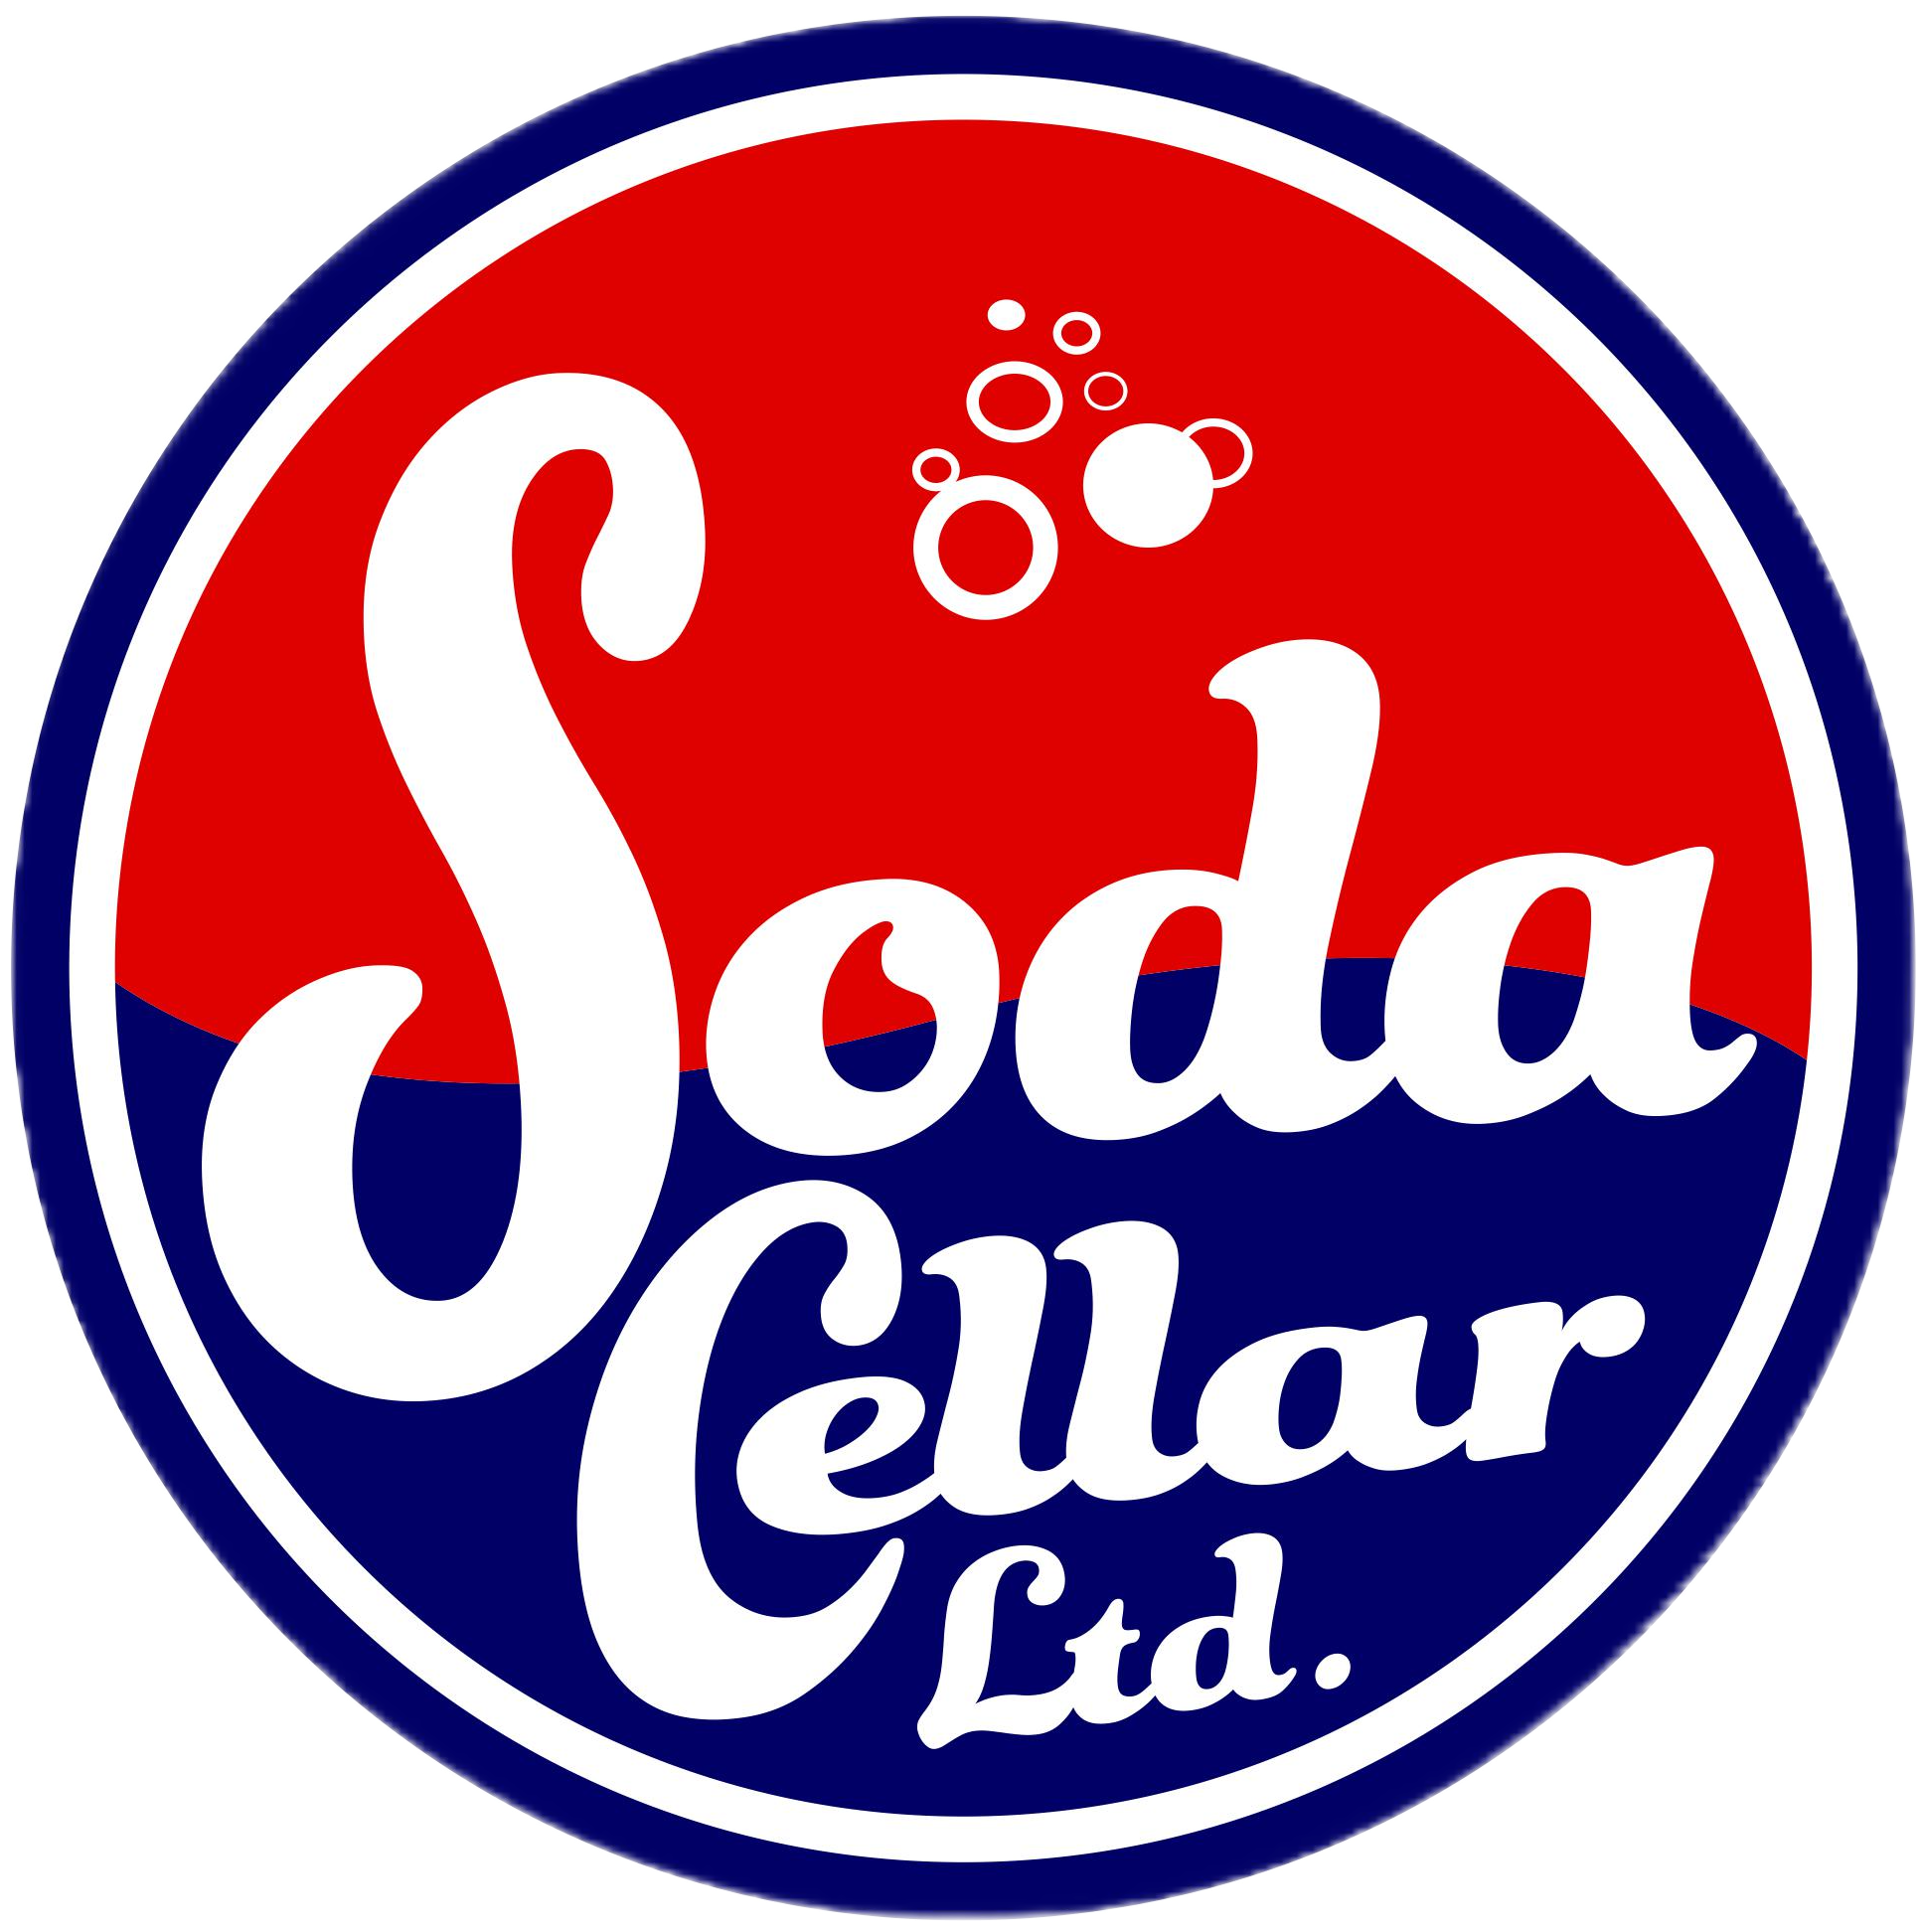 Soda Cellar logo